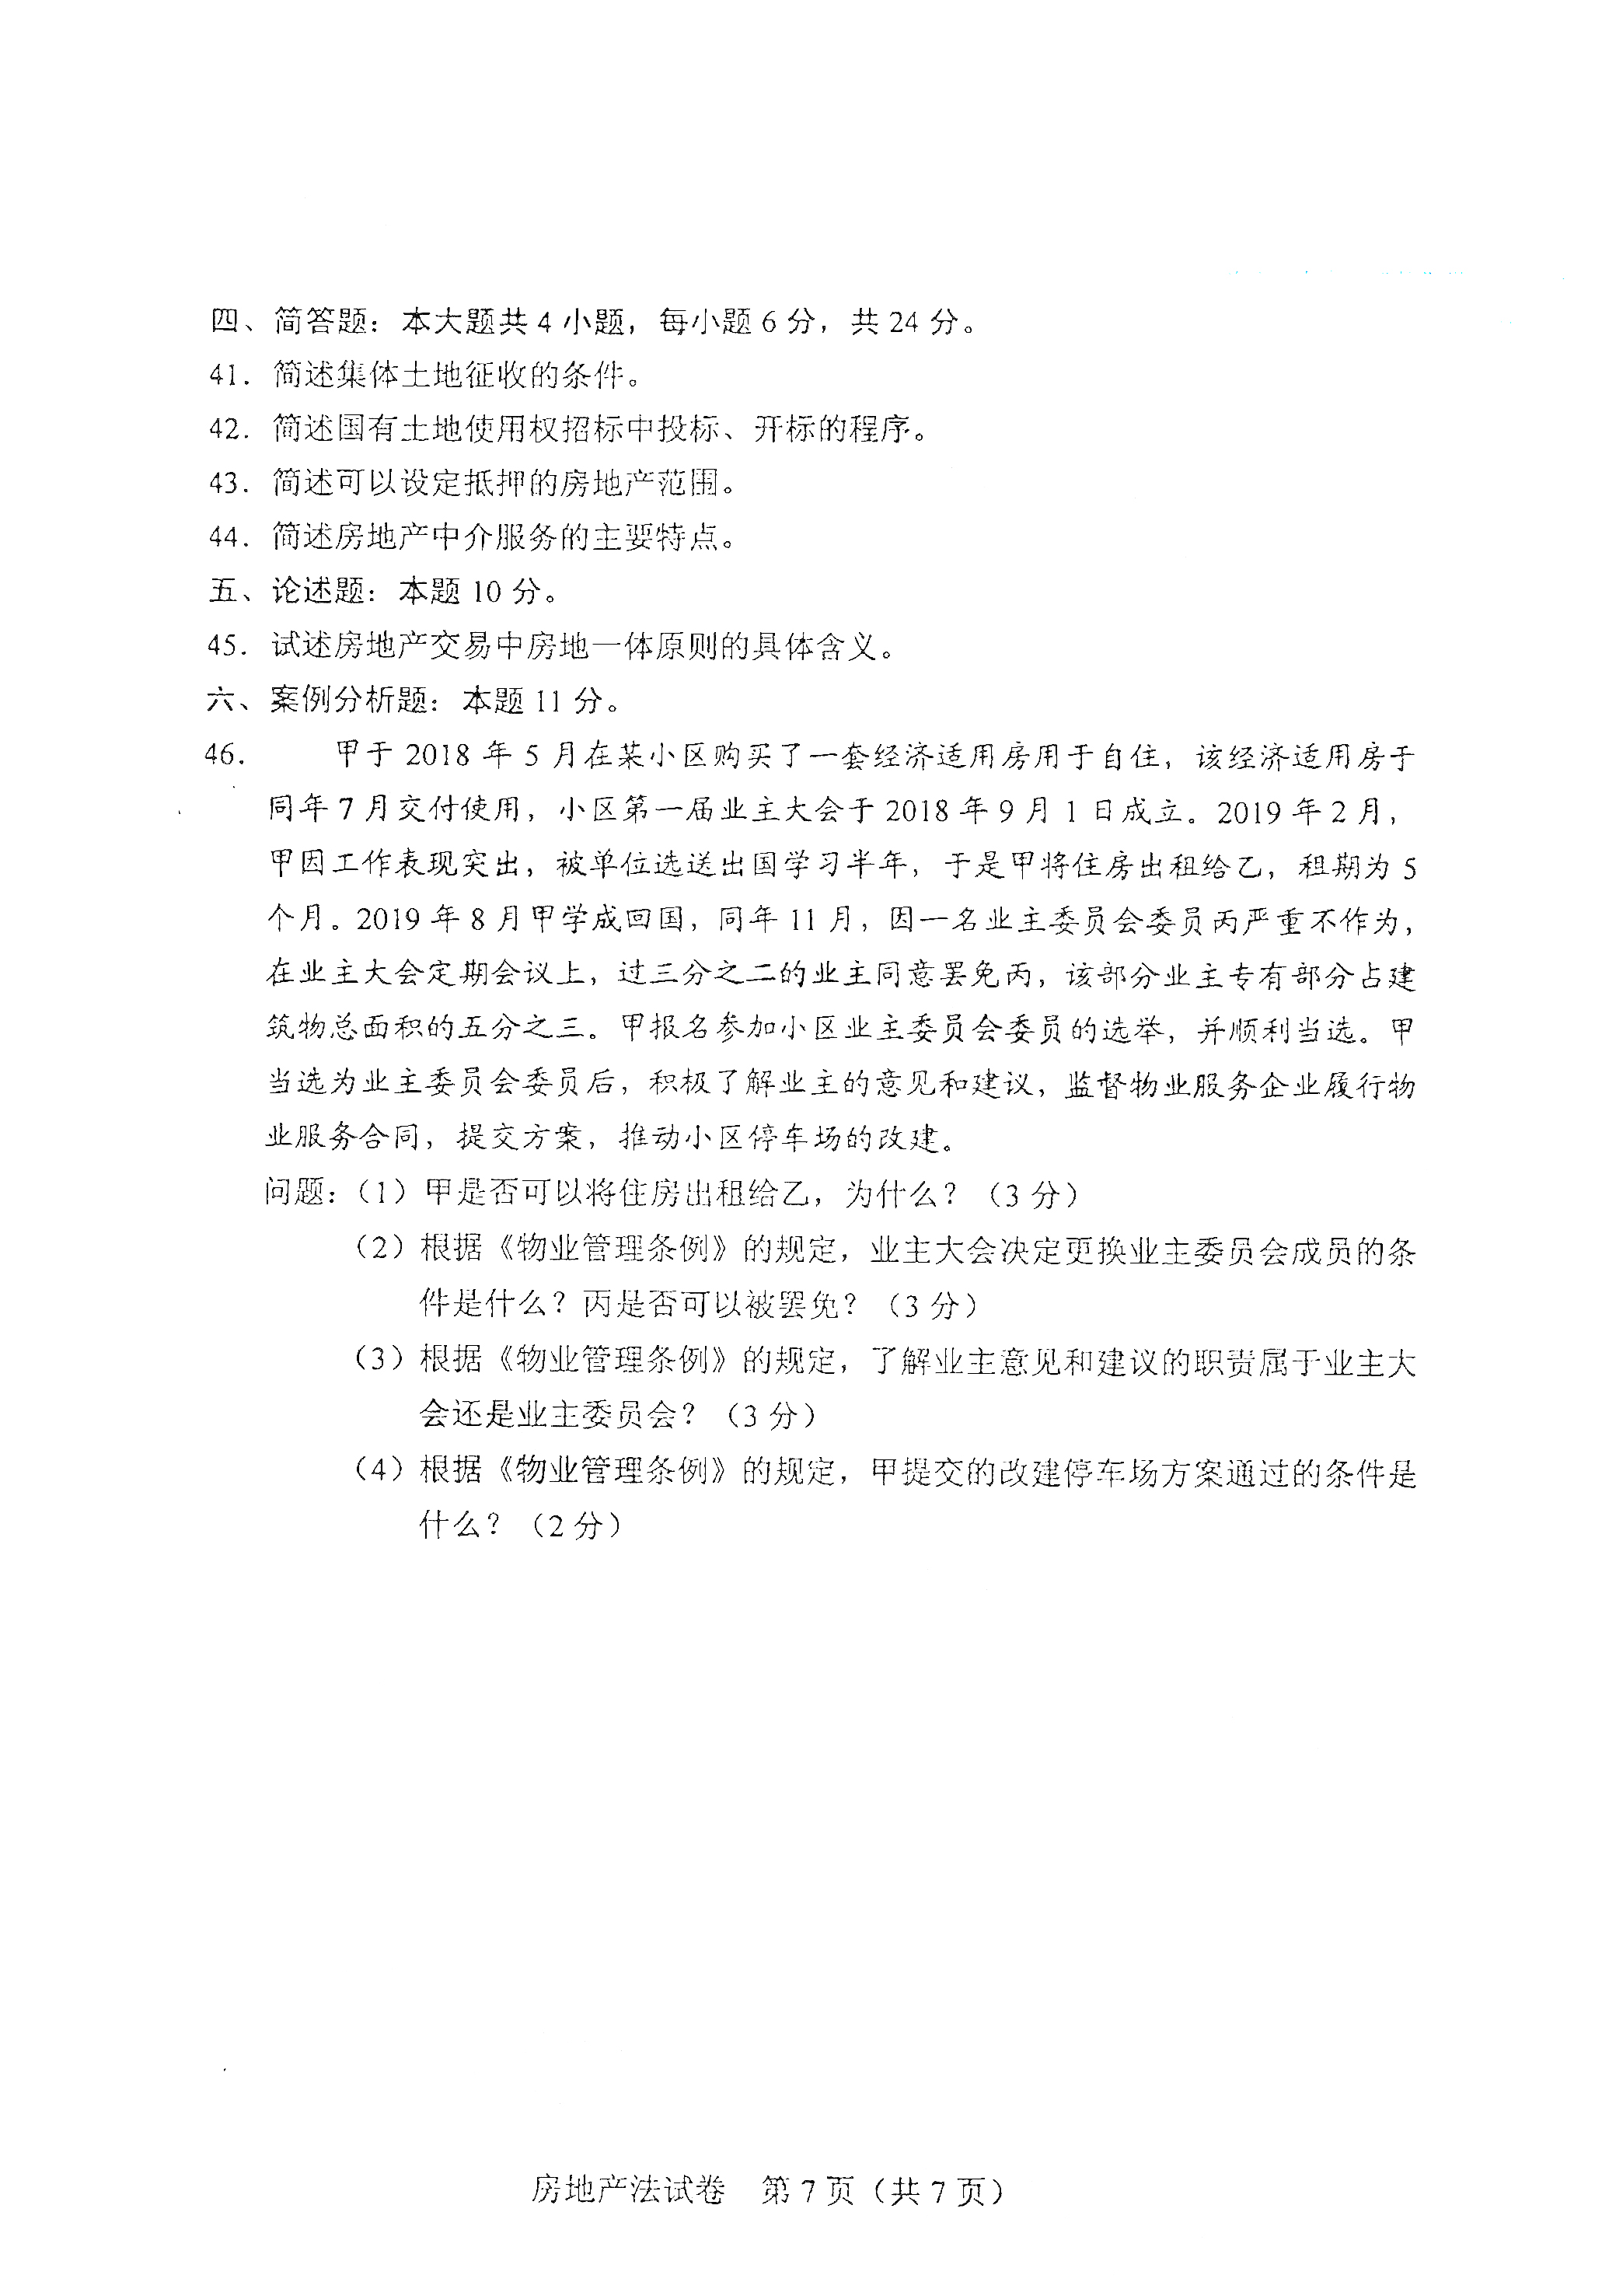 贵州自考2021年4月自考00169房地产法真题试卷